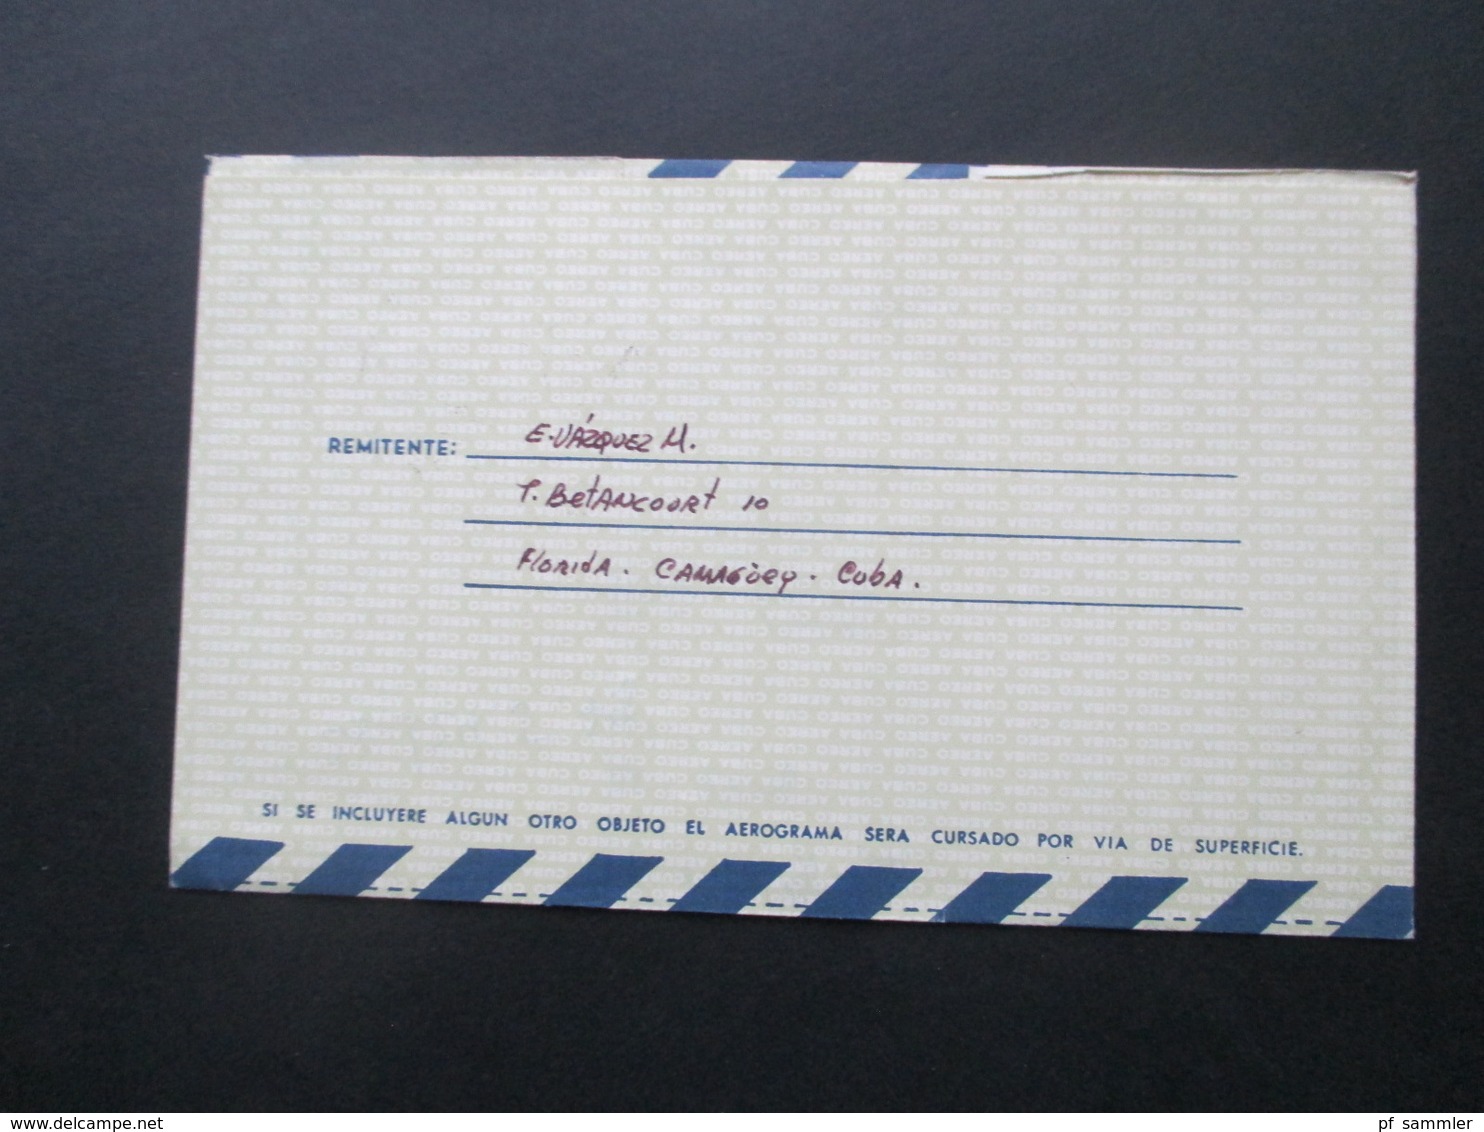 Kuba / Cuba 1975 - 1982 Air Mail Letter / Aerogramme in die DDR 18 Belege Luftpost